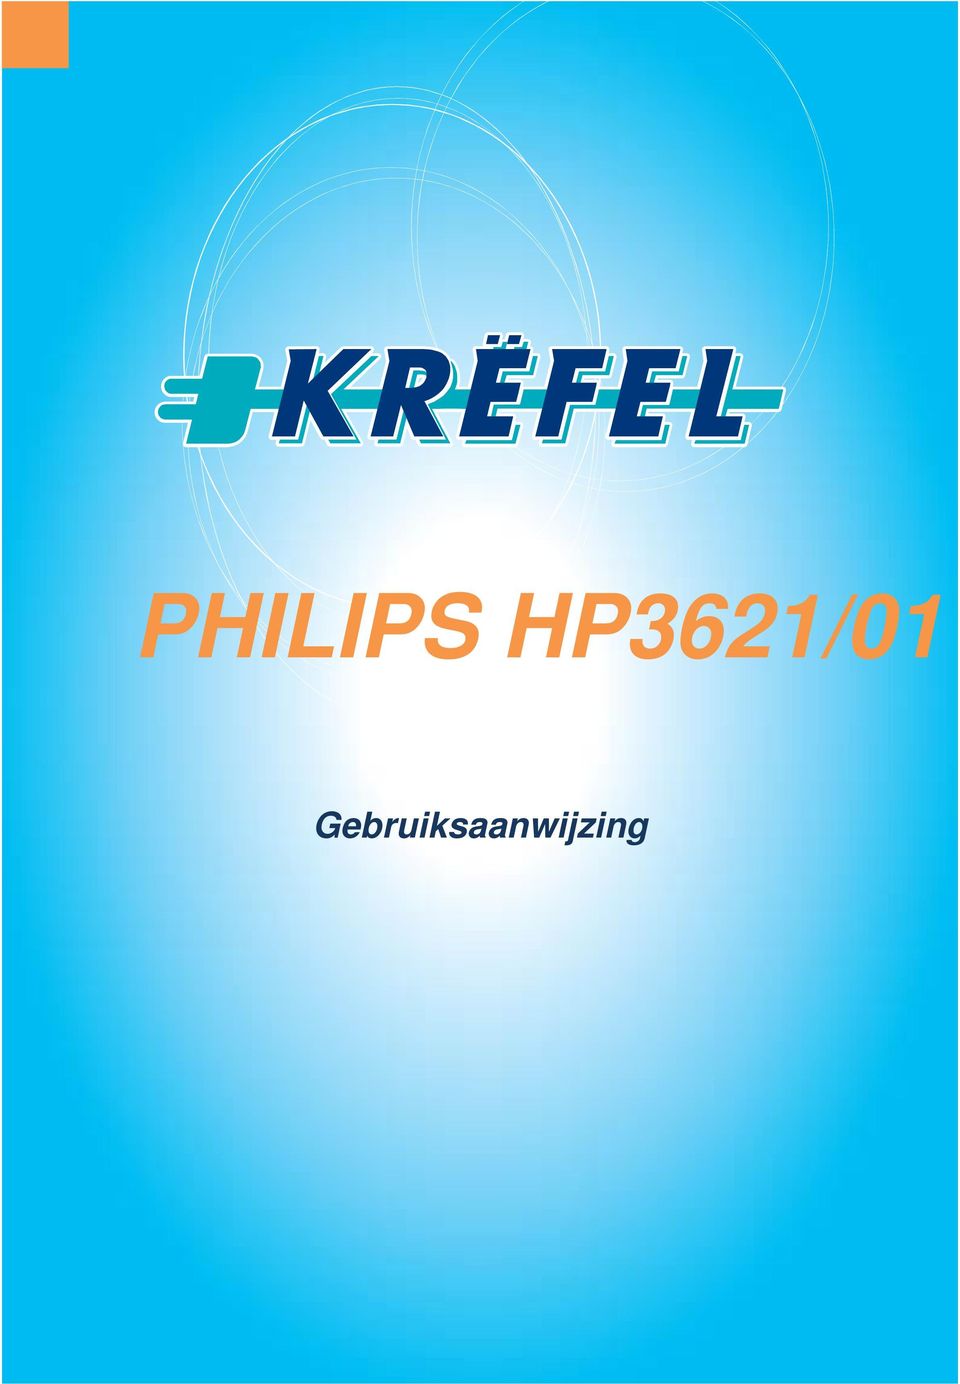 PHILIPS HP3621/01. Gebruiksaanwijzing - PDF Free Download